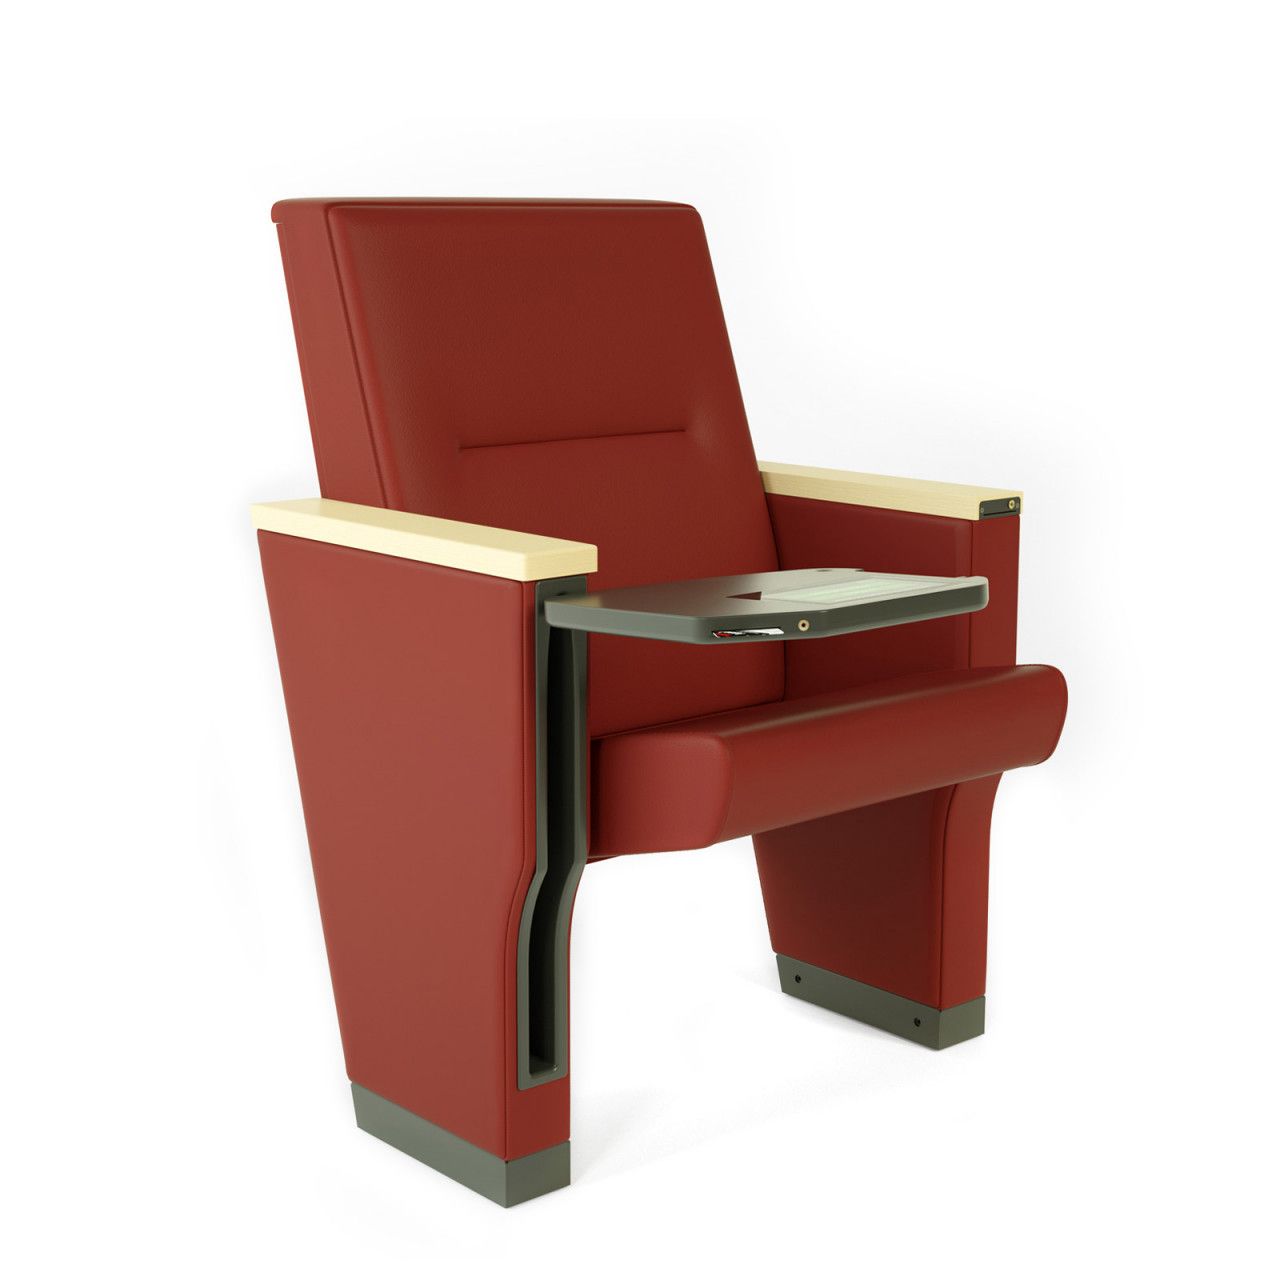 Fauteuil ergonomique avec assise fixe ou rabattable pour auditorium, salles de conférence, de cinéma ou de théatre -royale_0